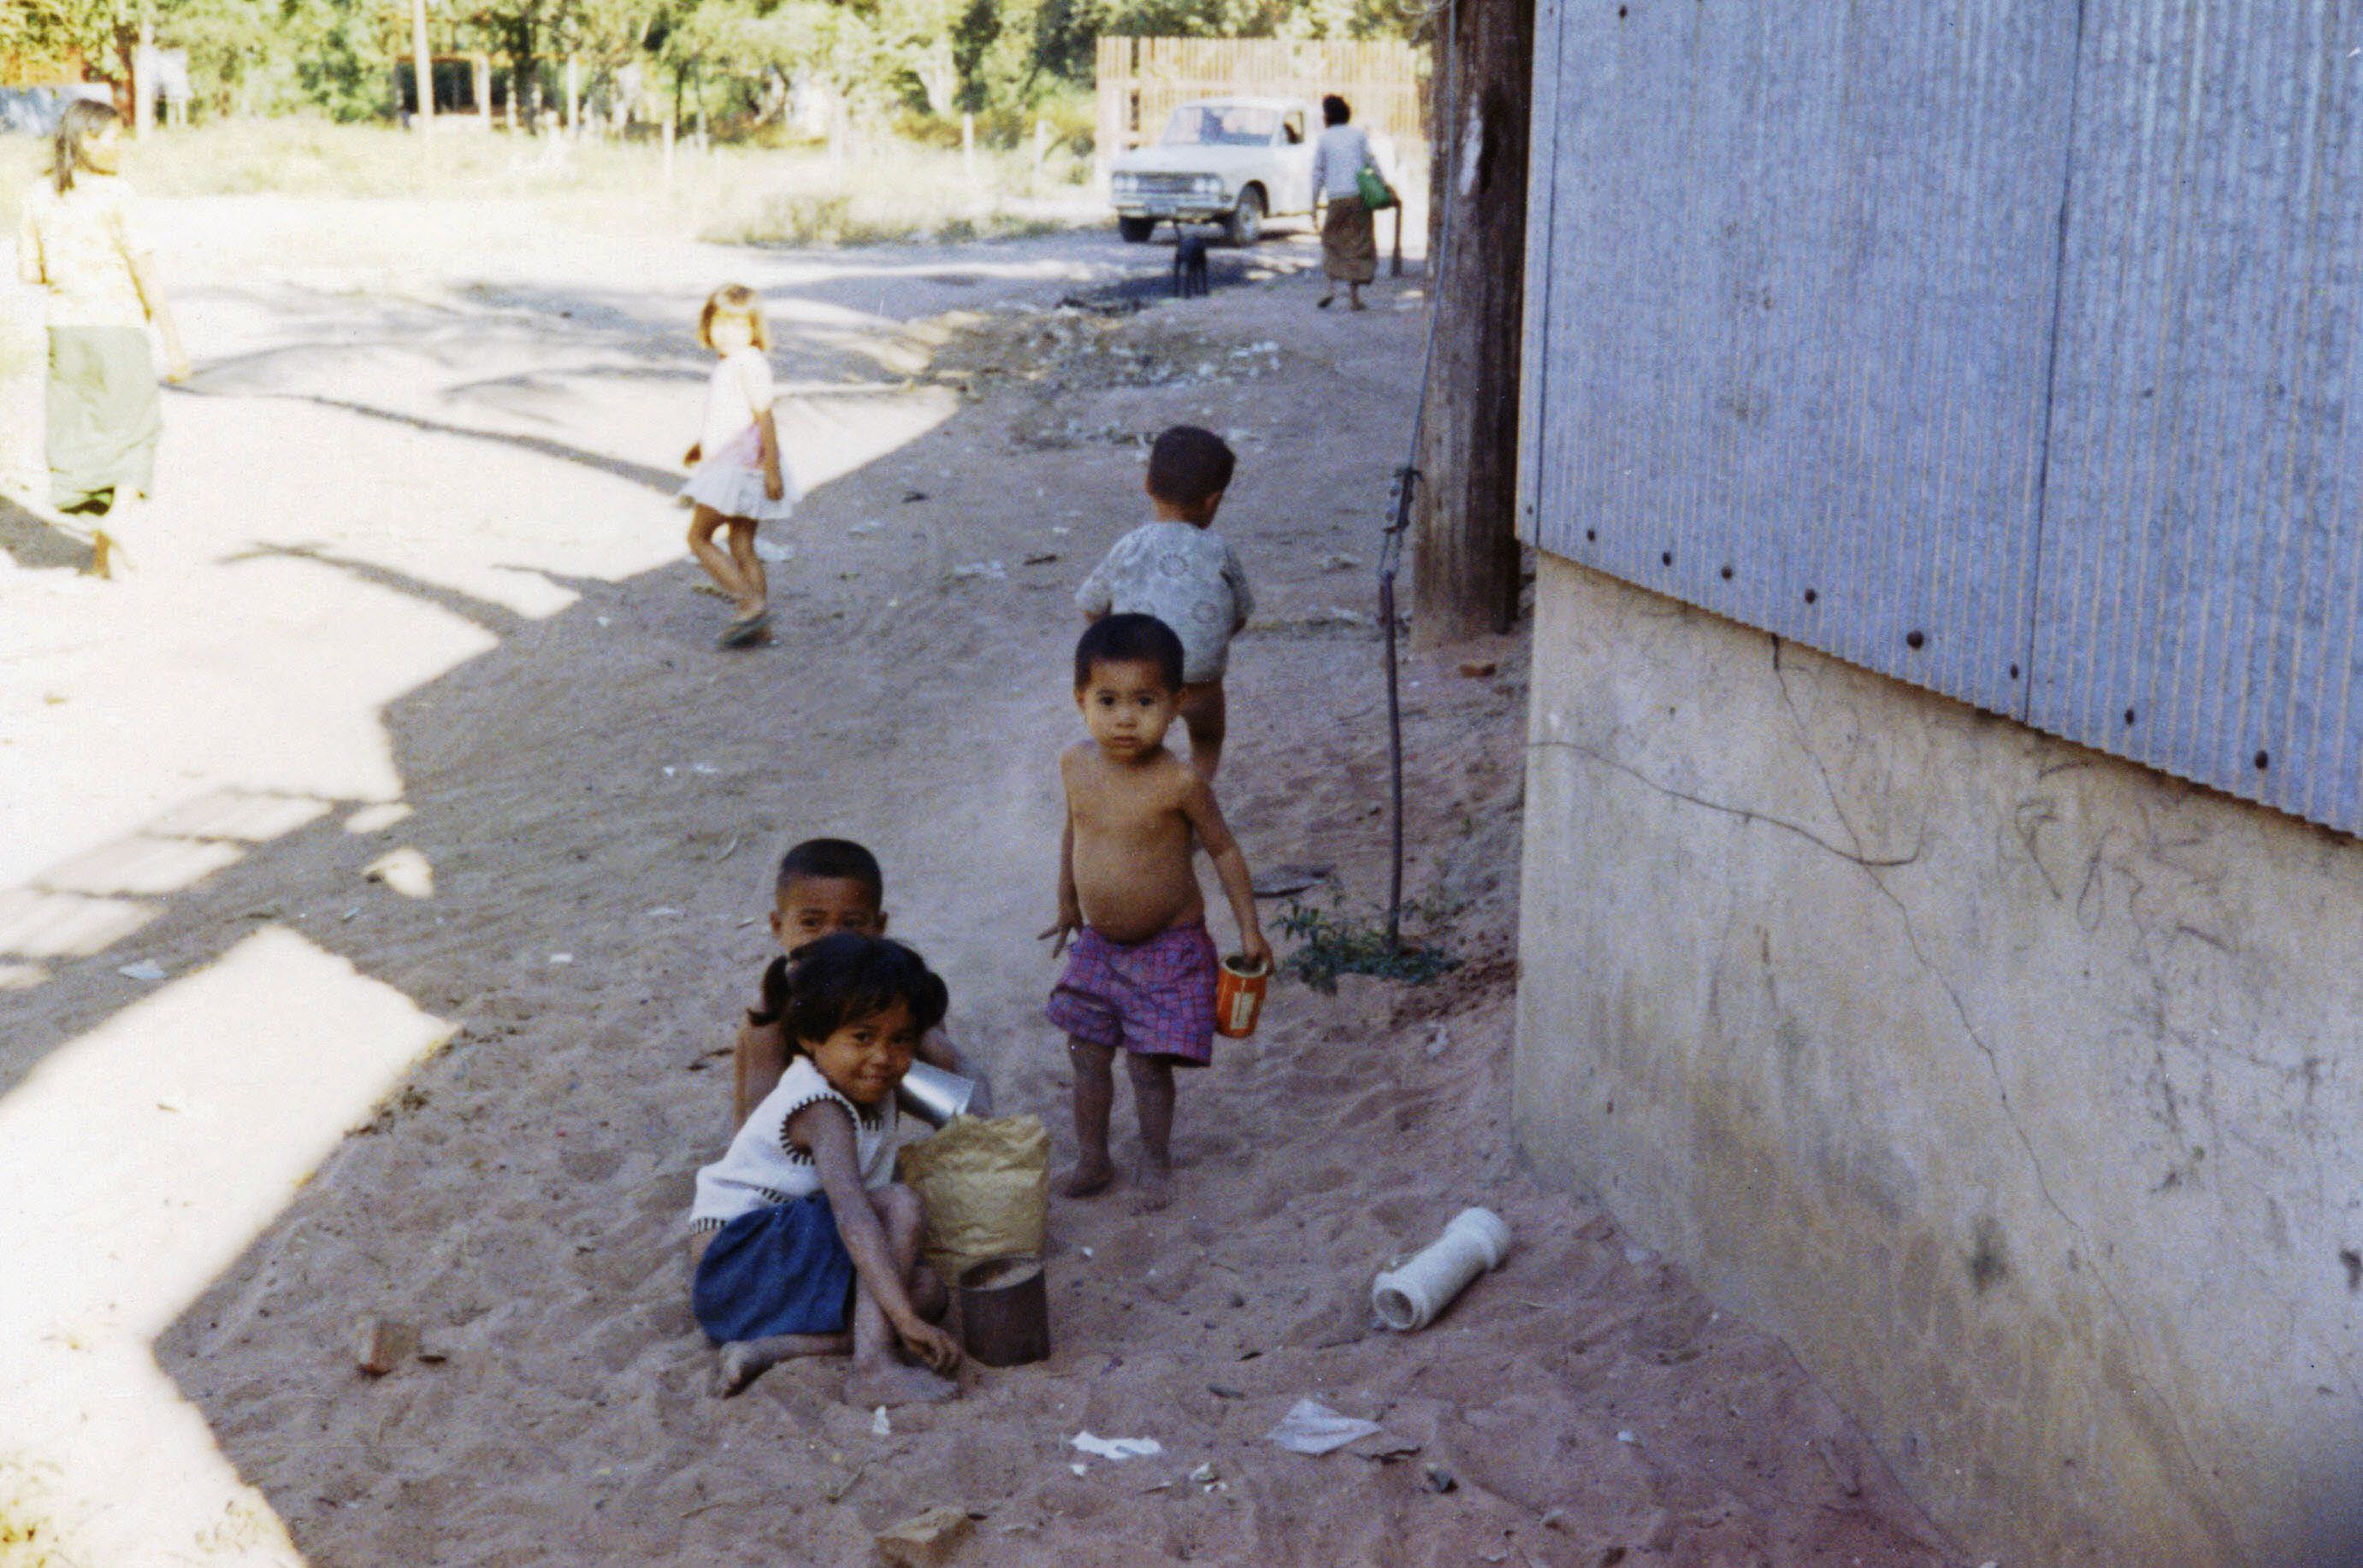 1969 - Thai kids playing